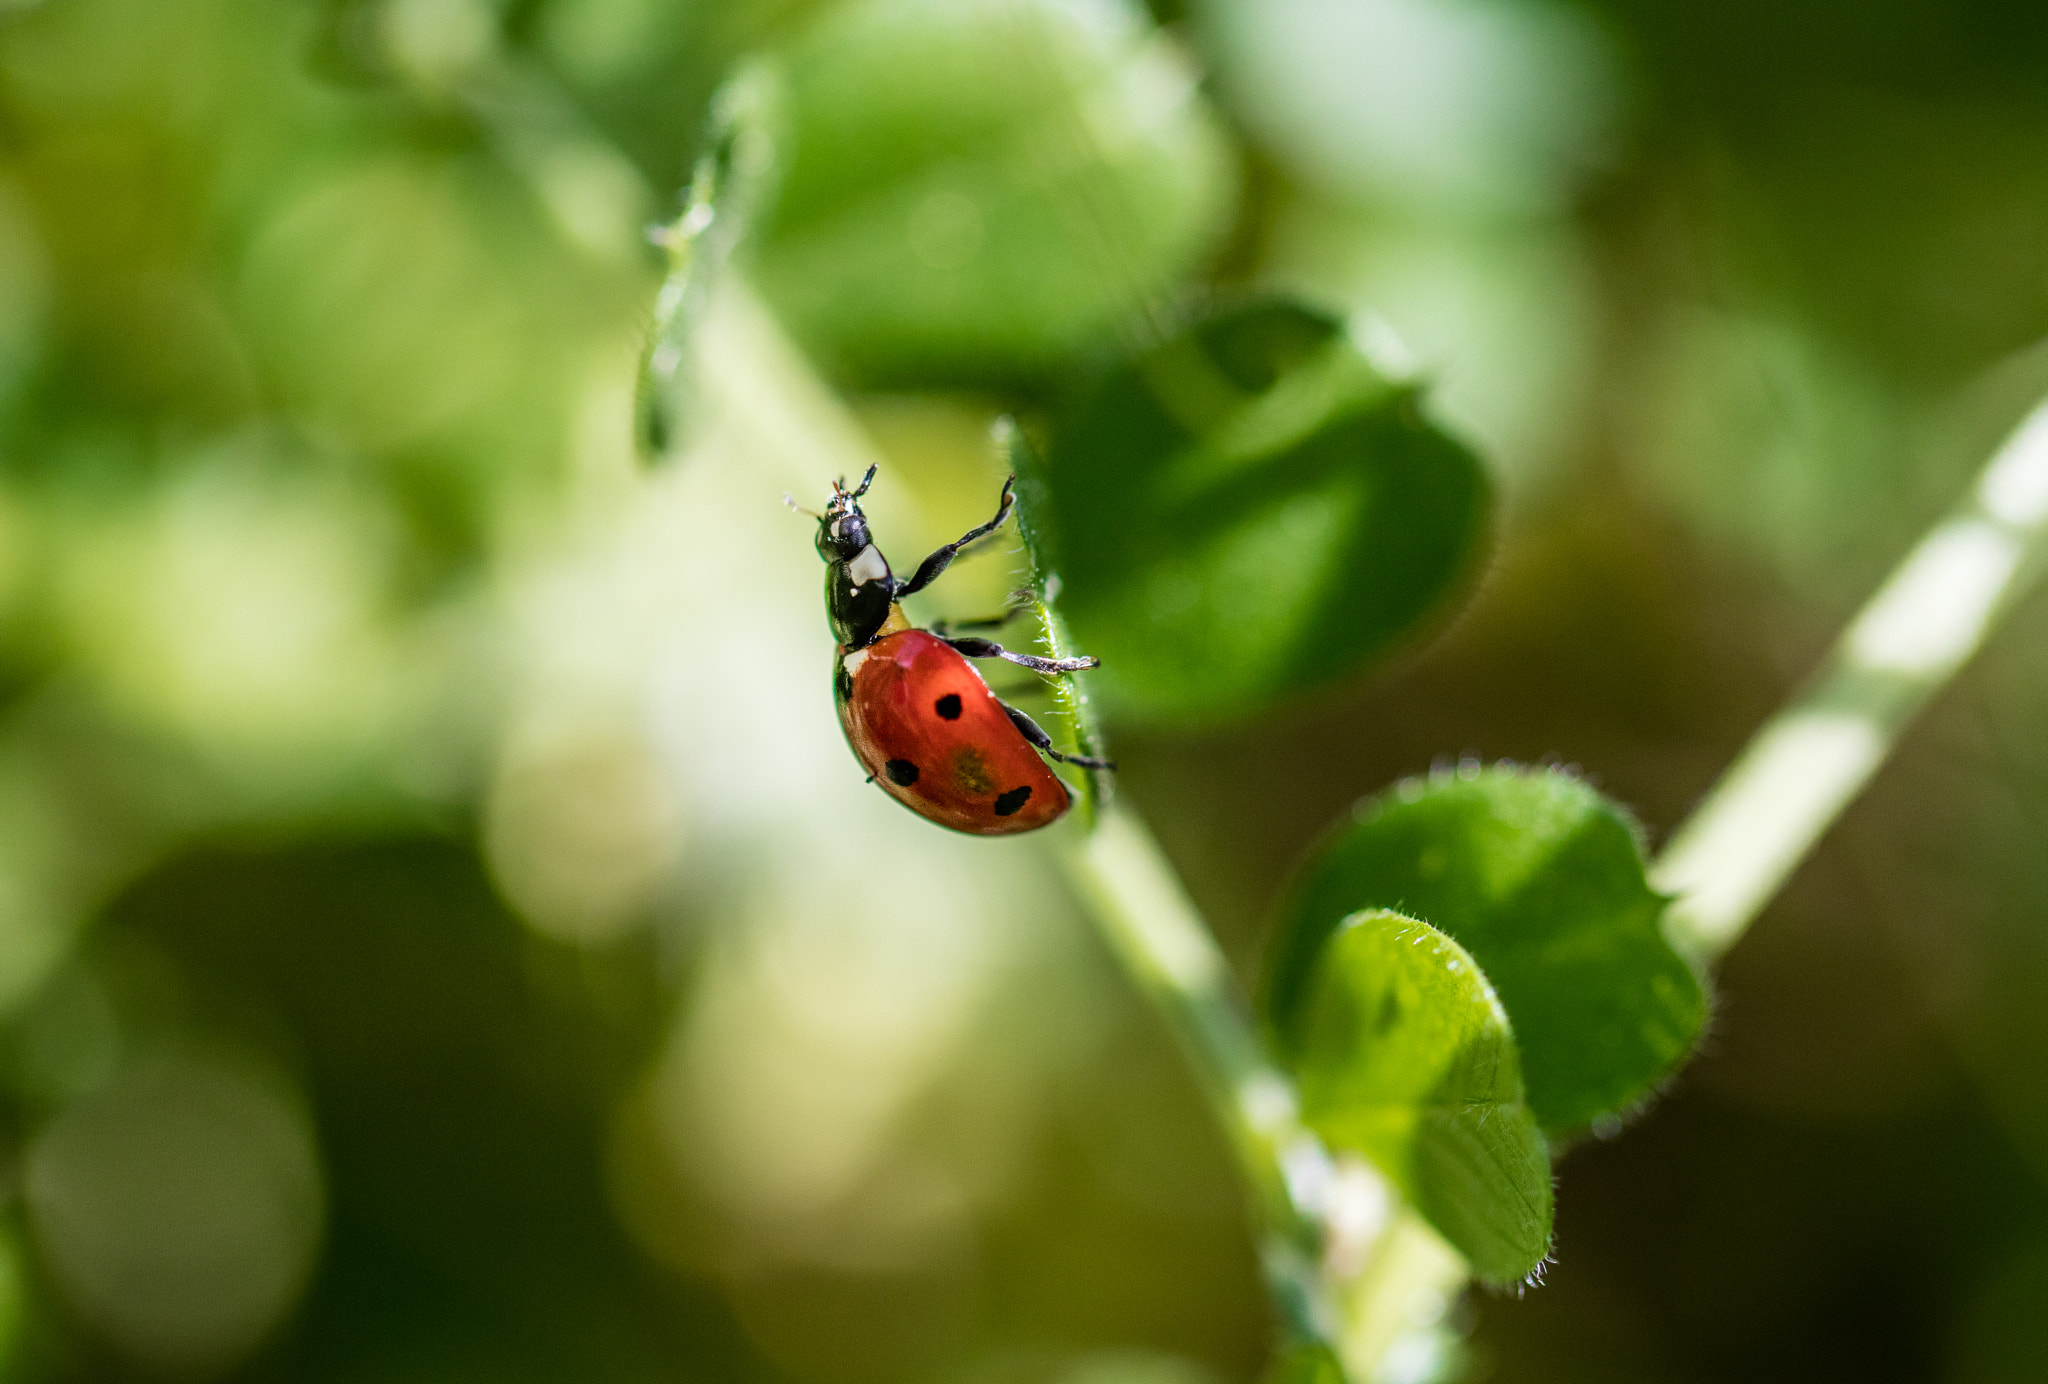 Canon EOS 5DS R sample photo. A ladybug's garden photography